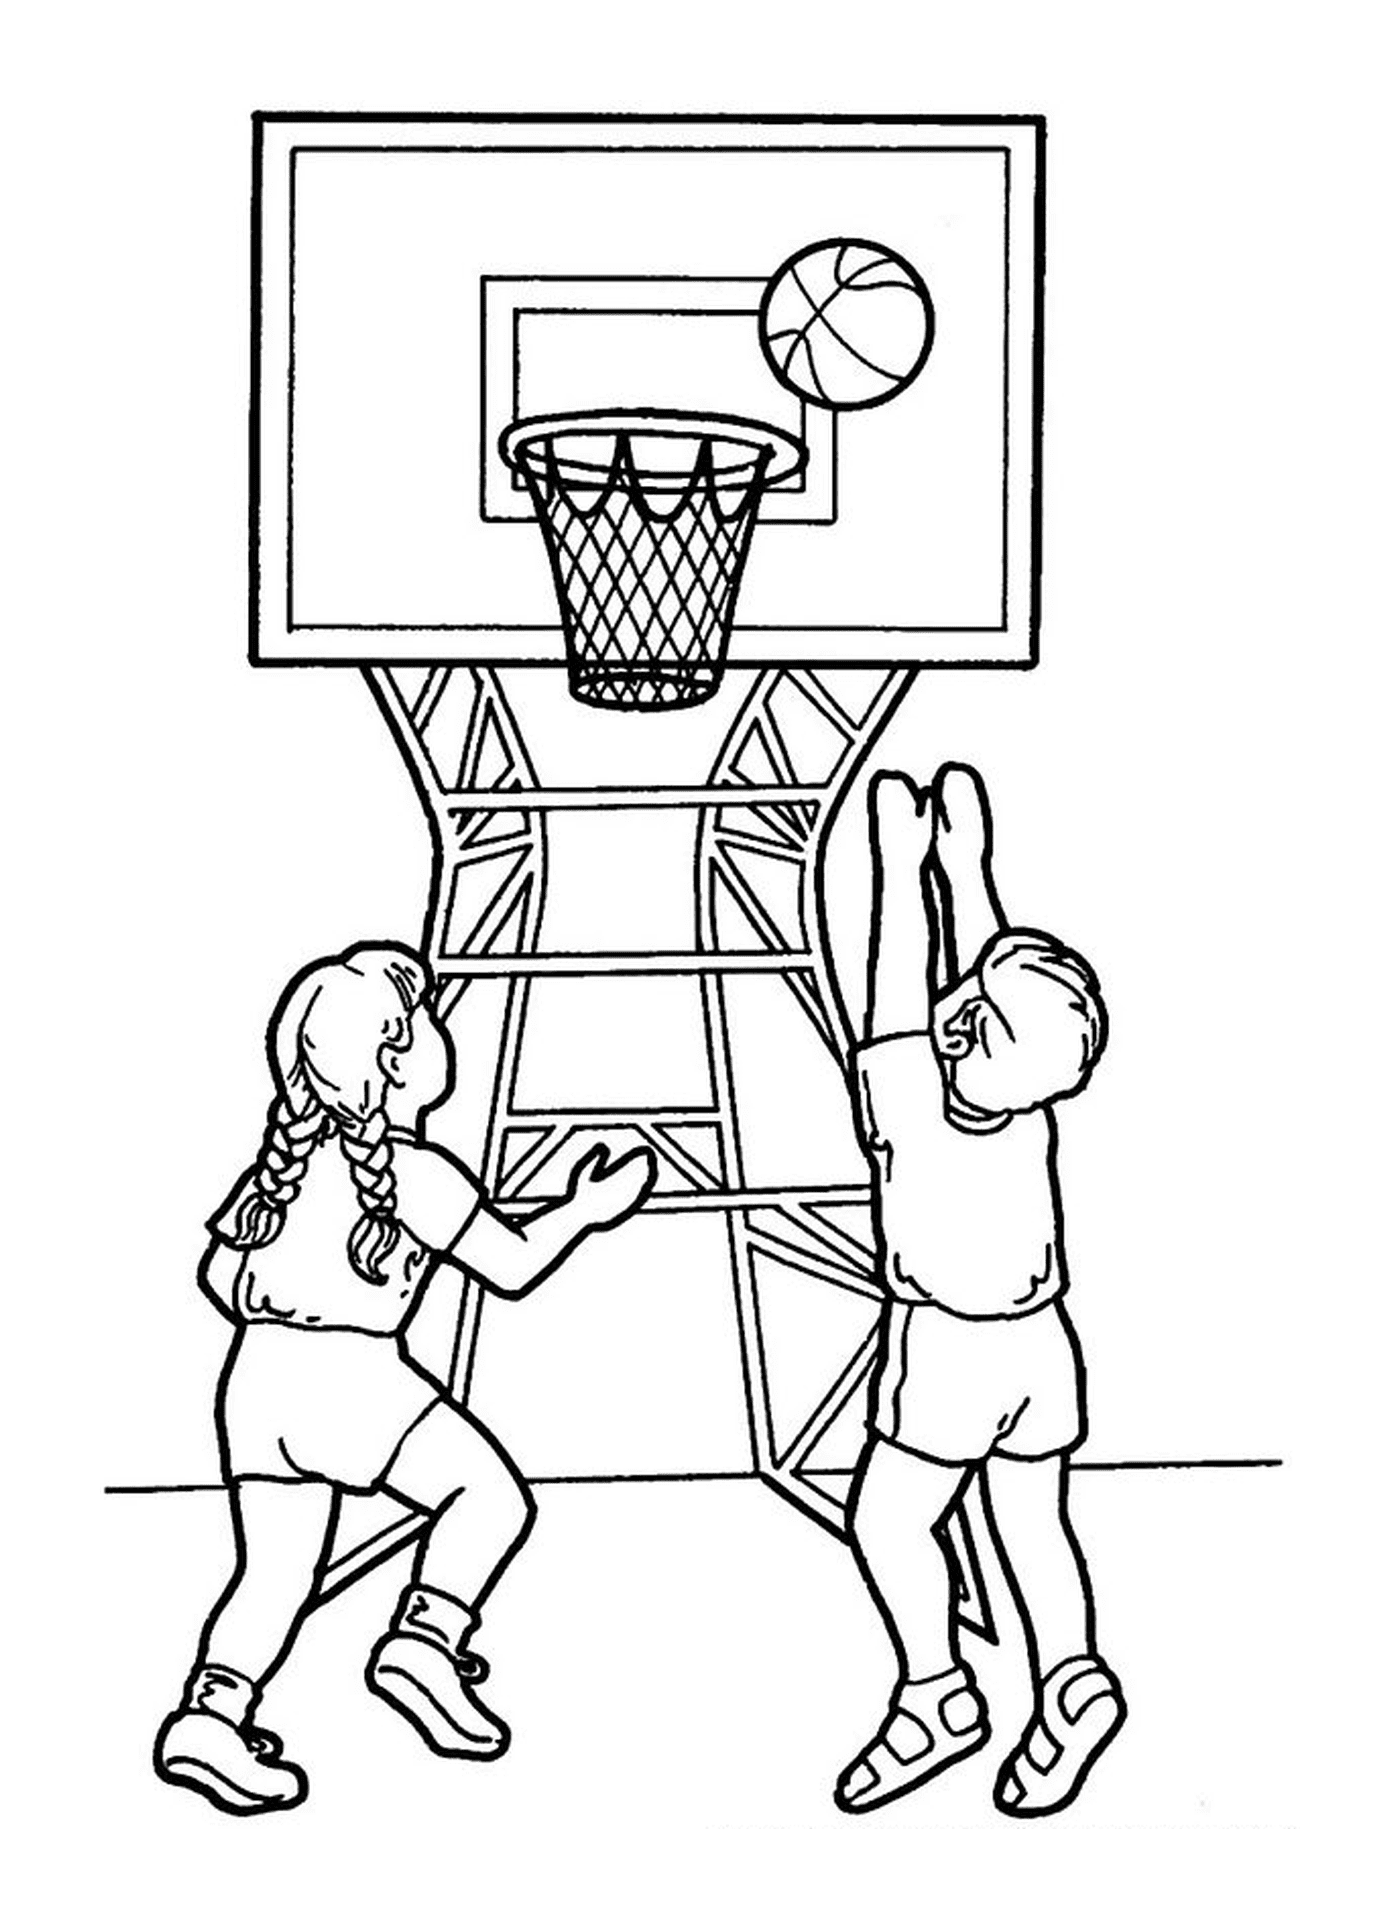  Um menino e uma menina jogam basquete 